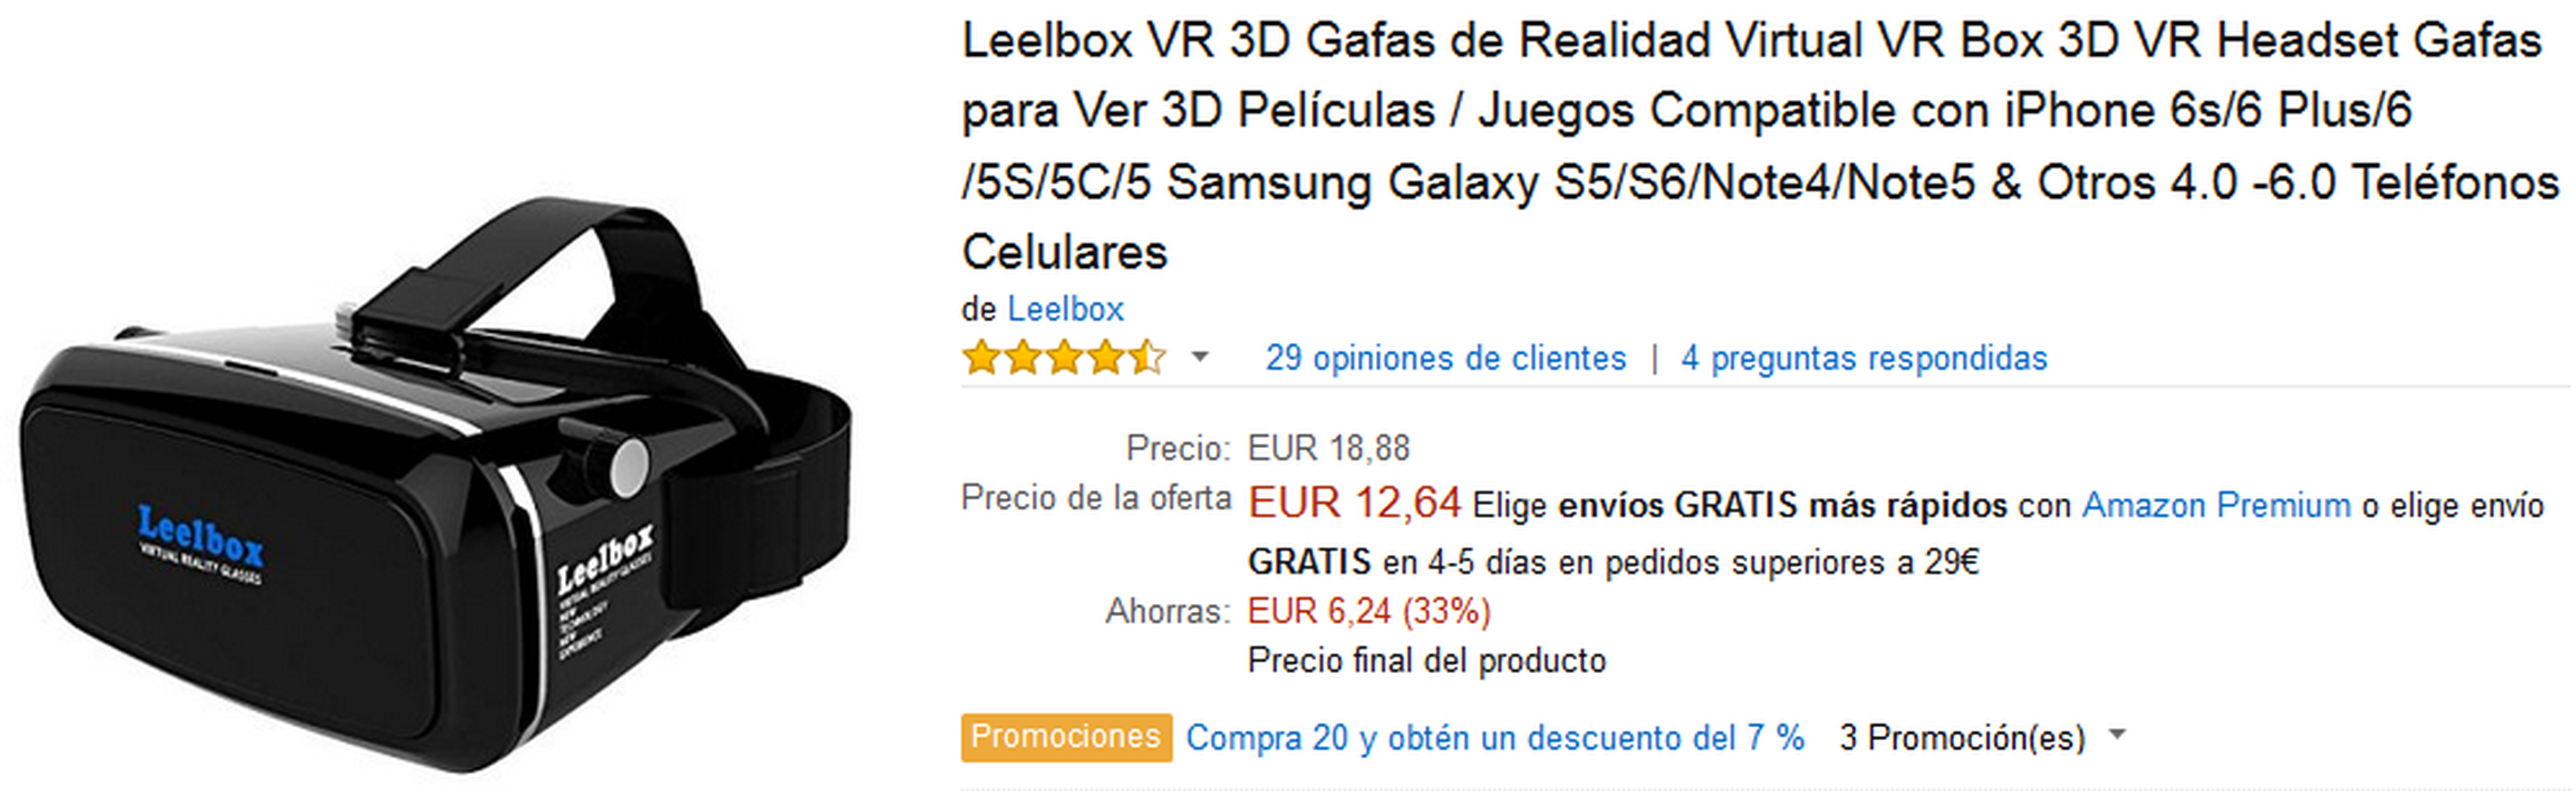 Gafas Leelbox VR 3D por 12,64 €